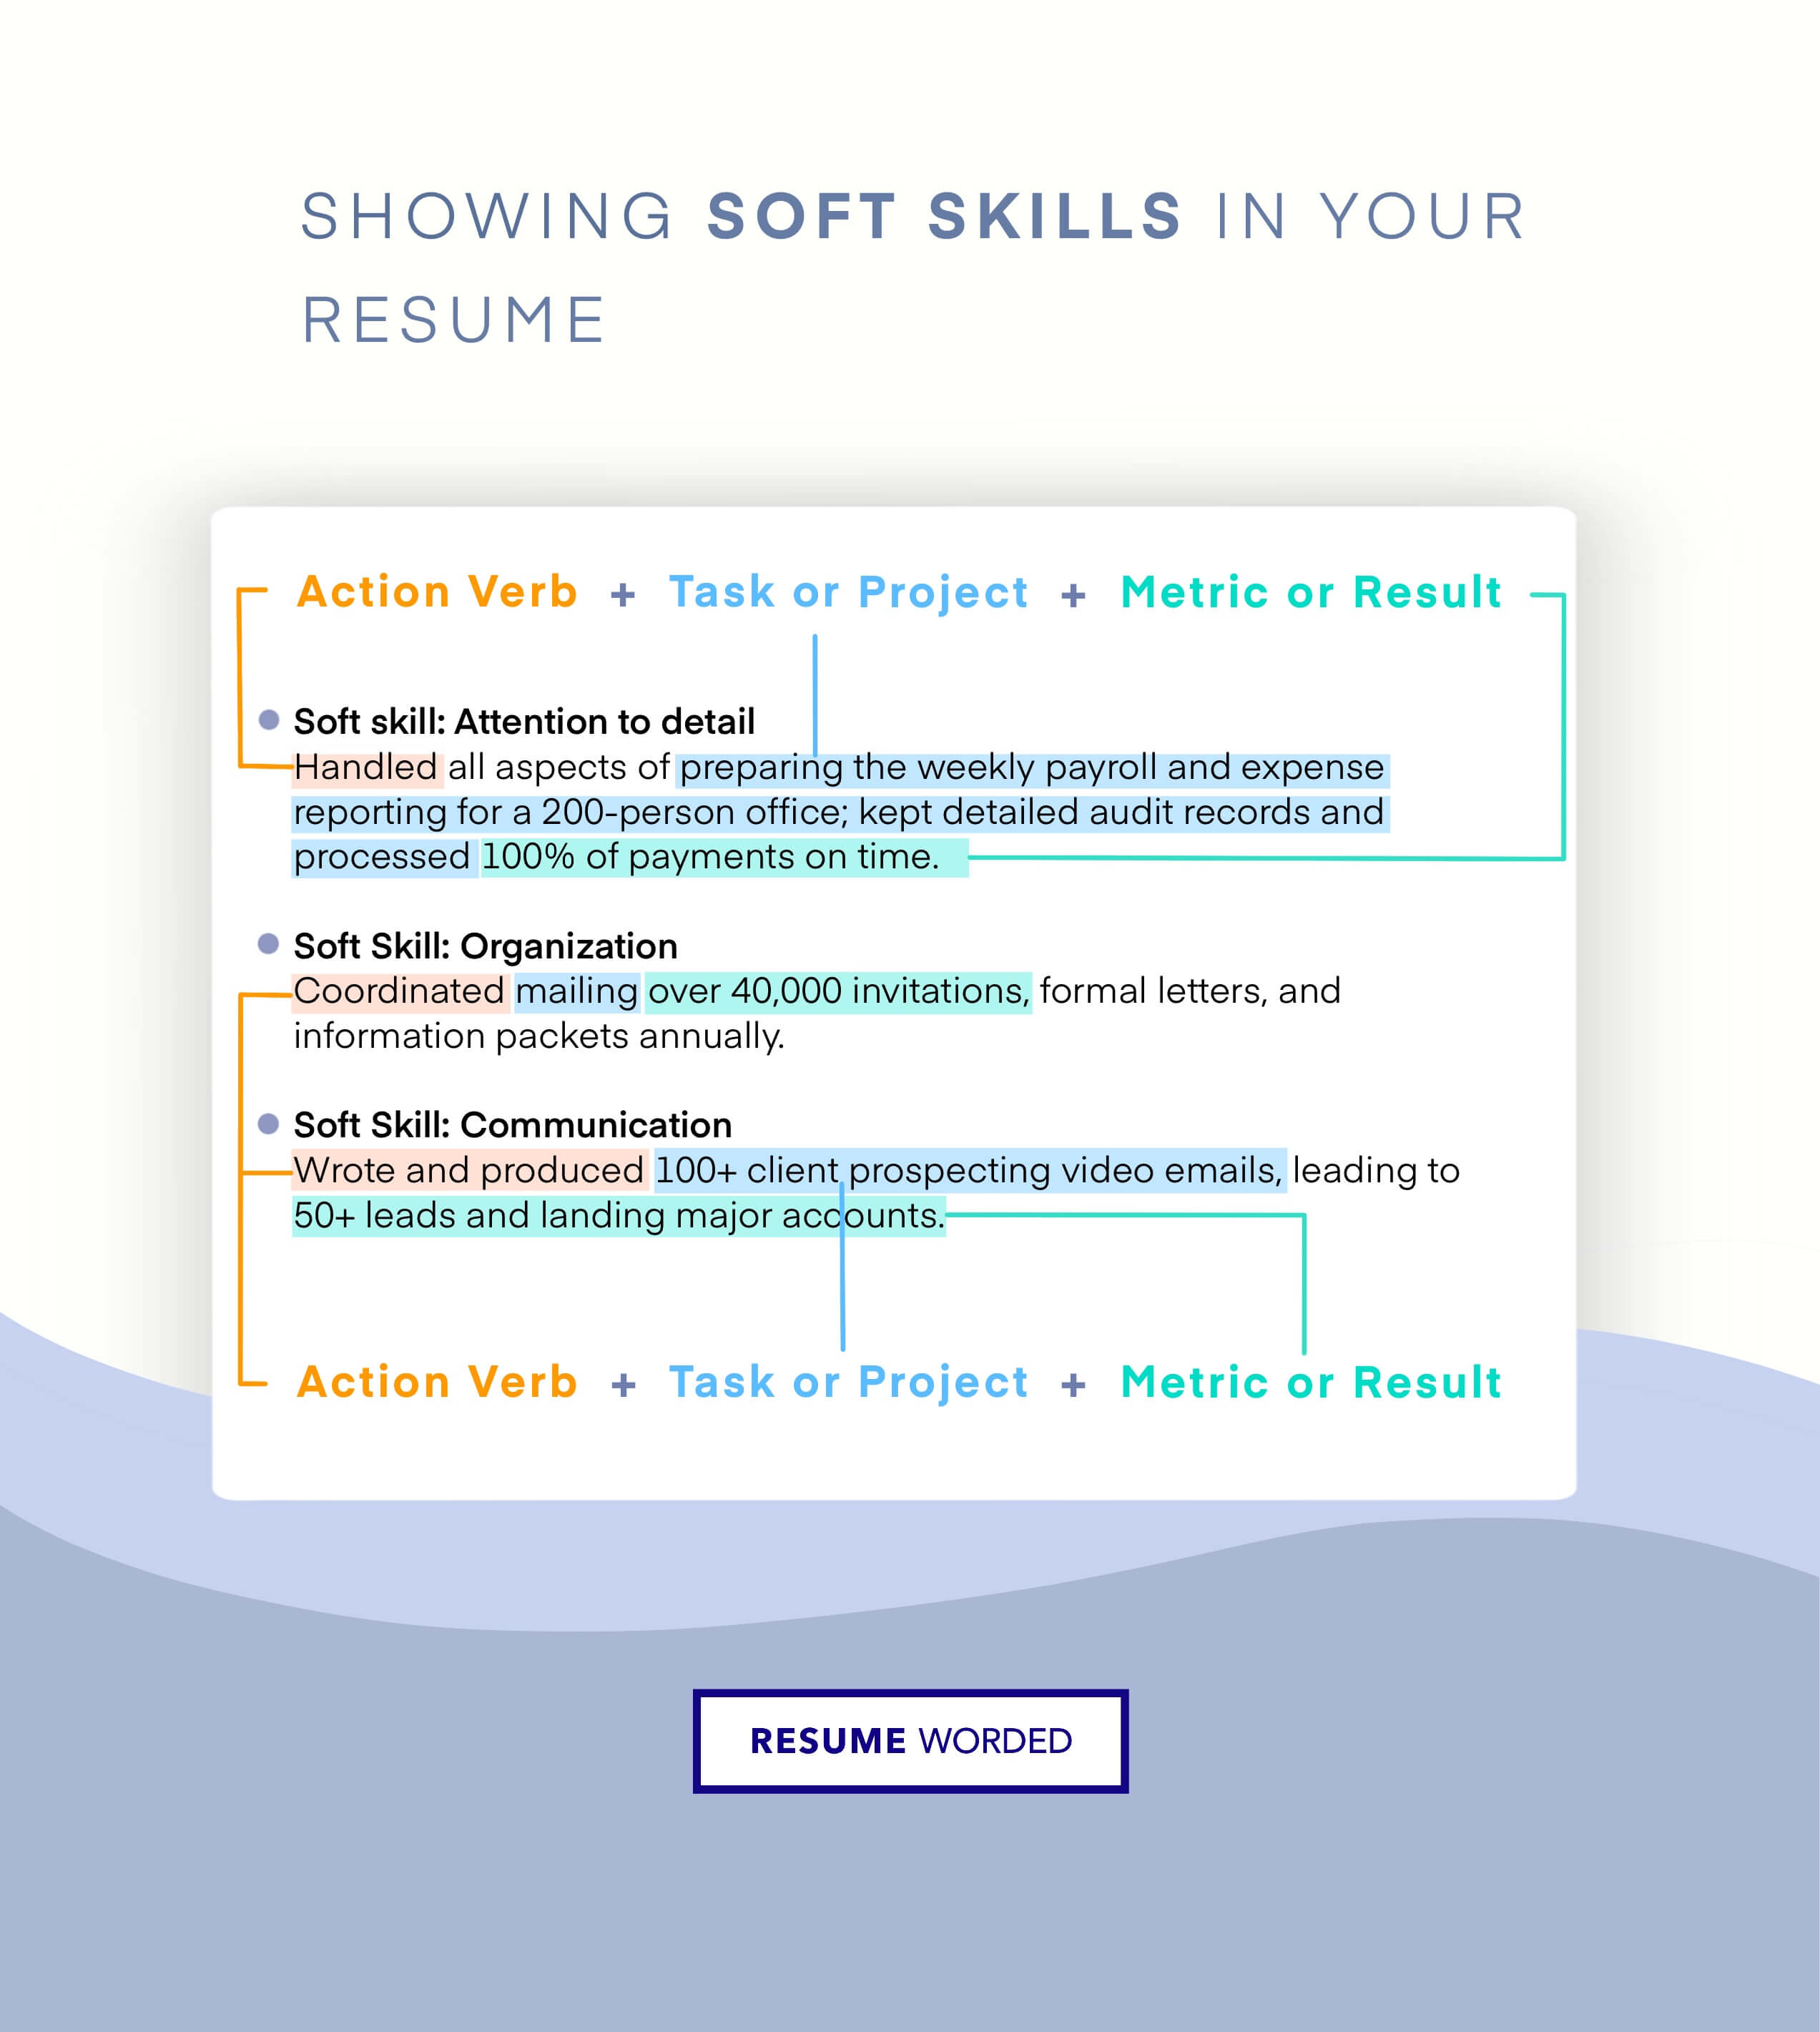 Detail your Soft Skills - Senior Technical Writer CV